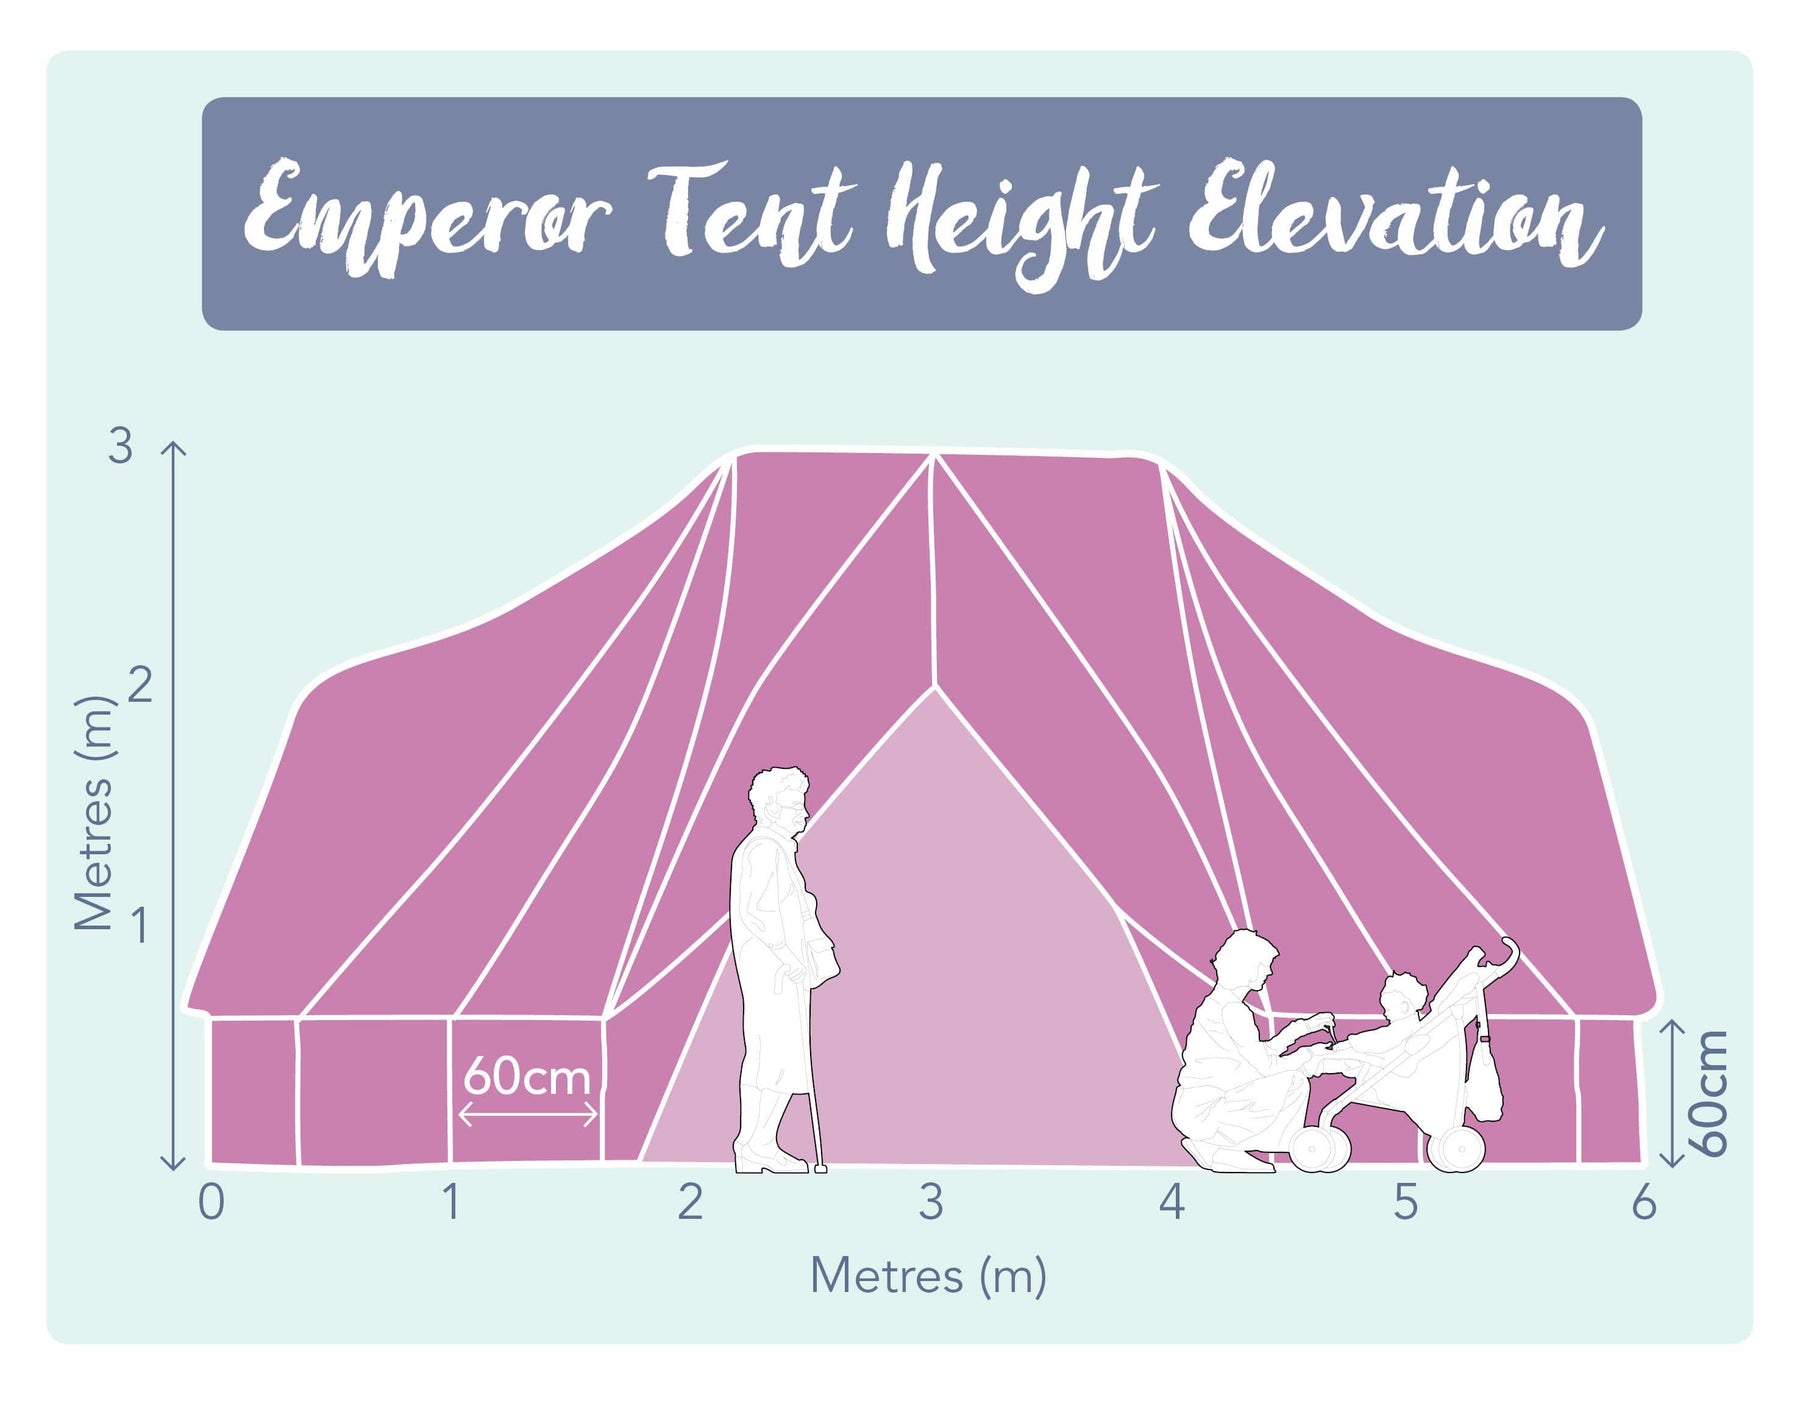 6 Metre Emperor Bell Tent